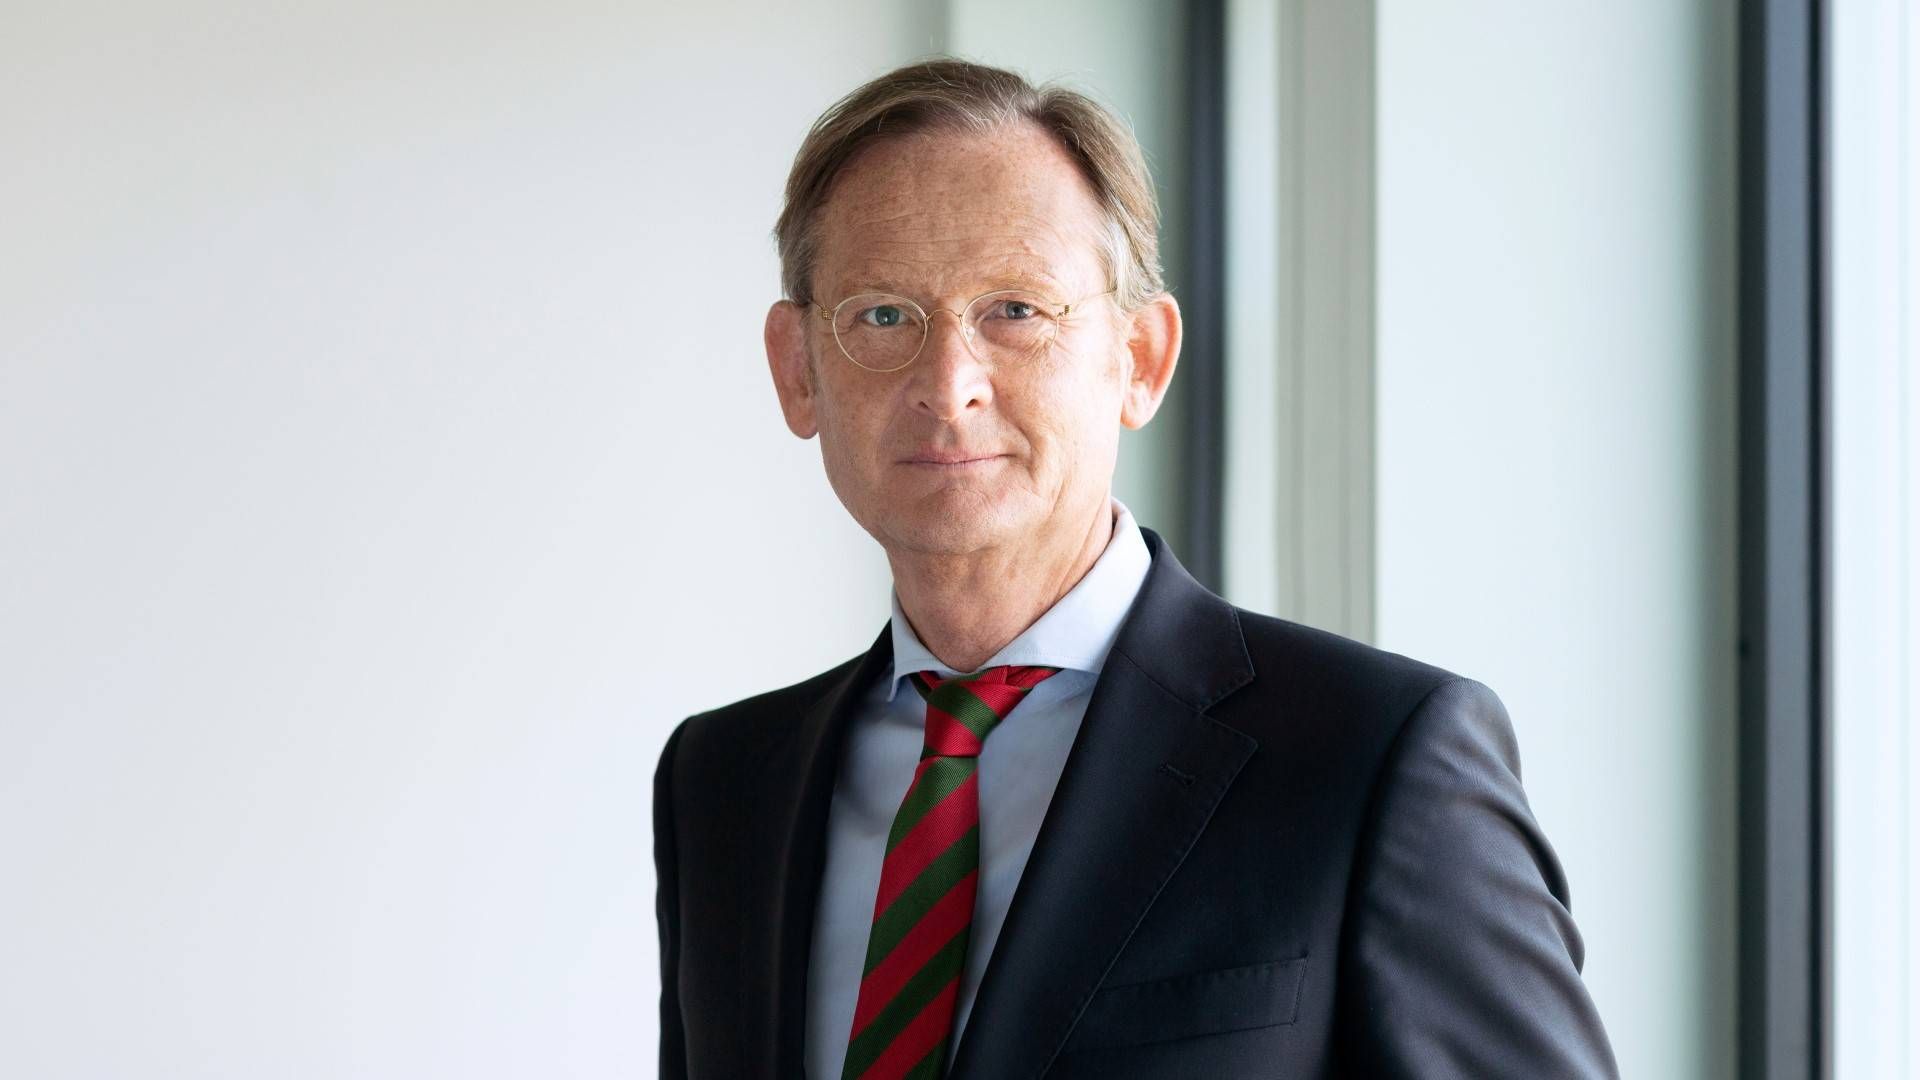 Jürgen Allerkamp, Vorstandsvorsitzender der IBB | Foto: Investitionsbank Berlin